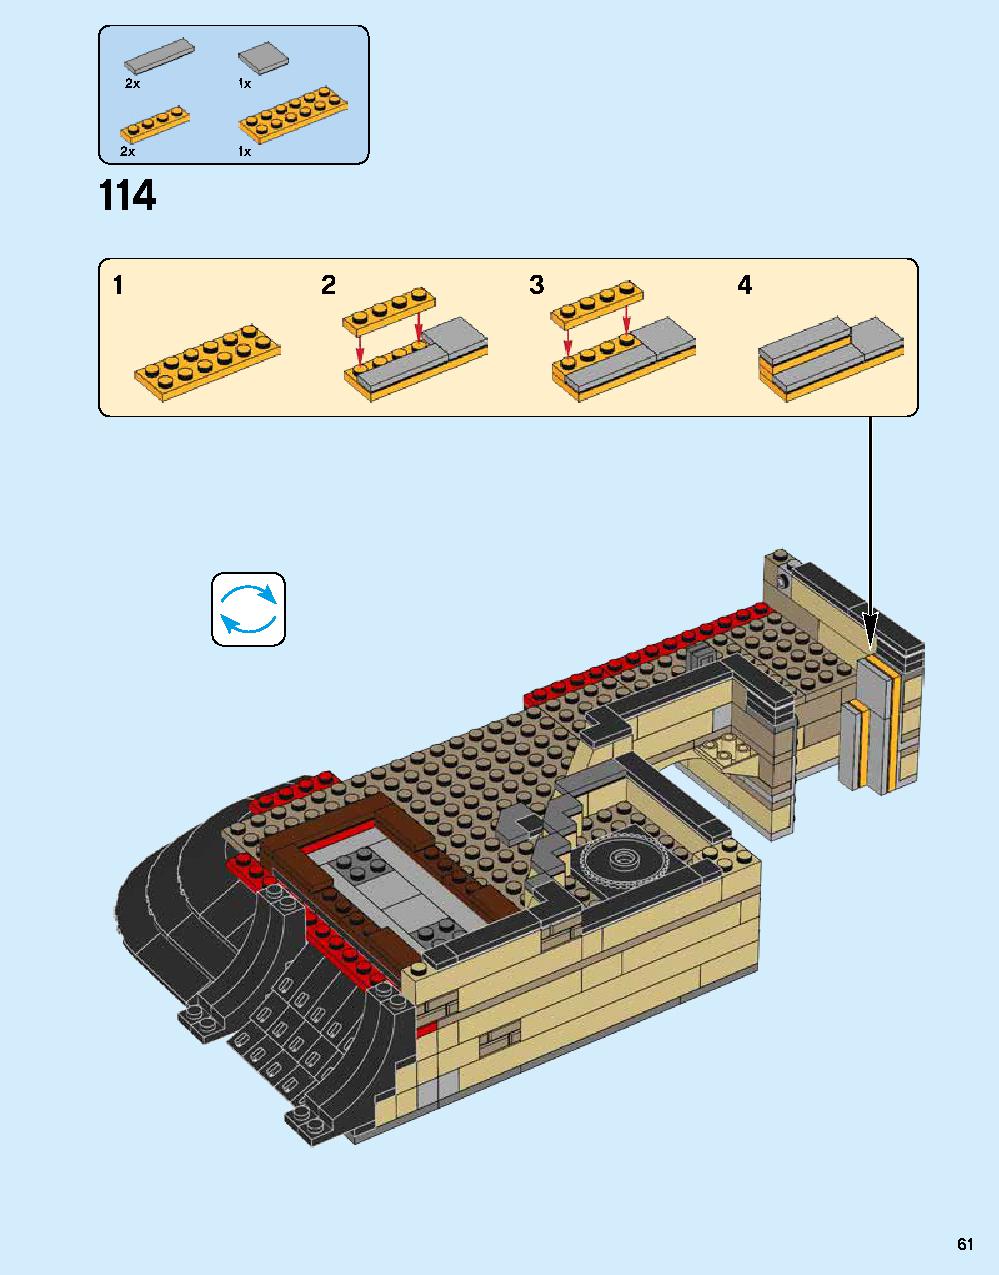 ニンジャゴー シティ 70620 レゴの商品情報 レゴの説明書・組立方法 61 page